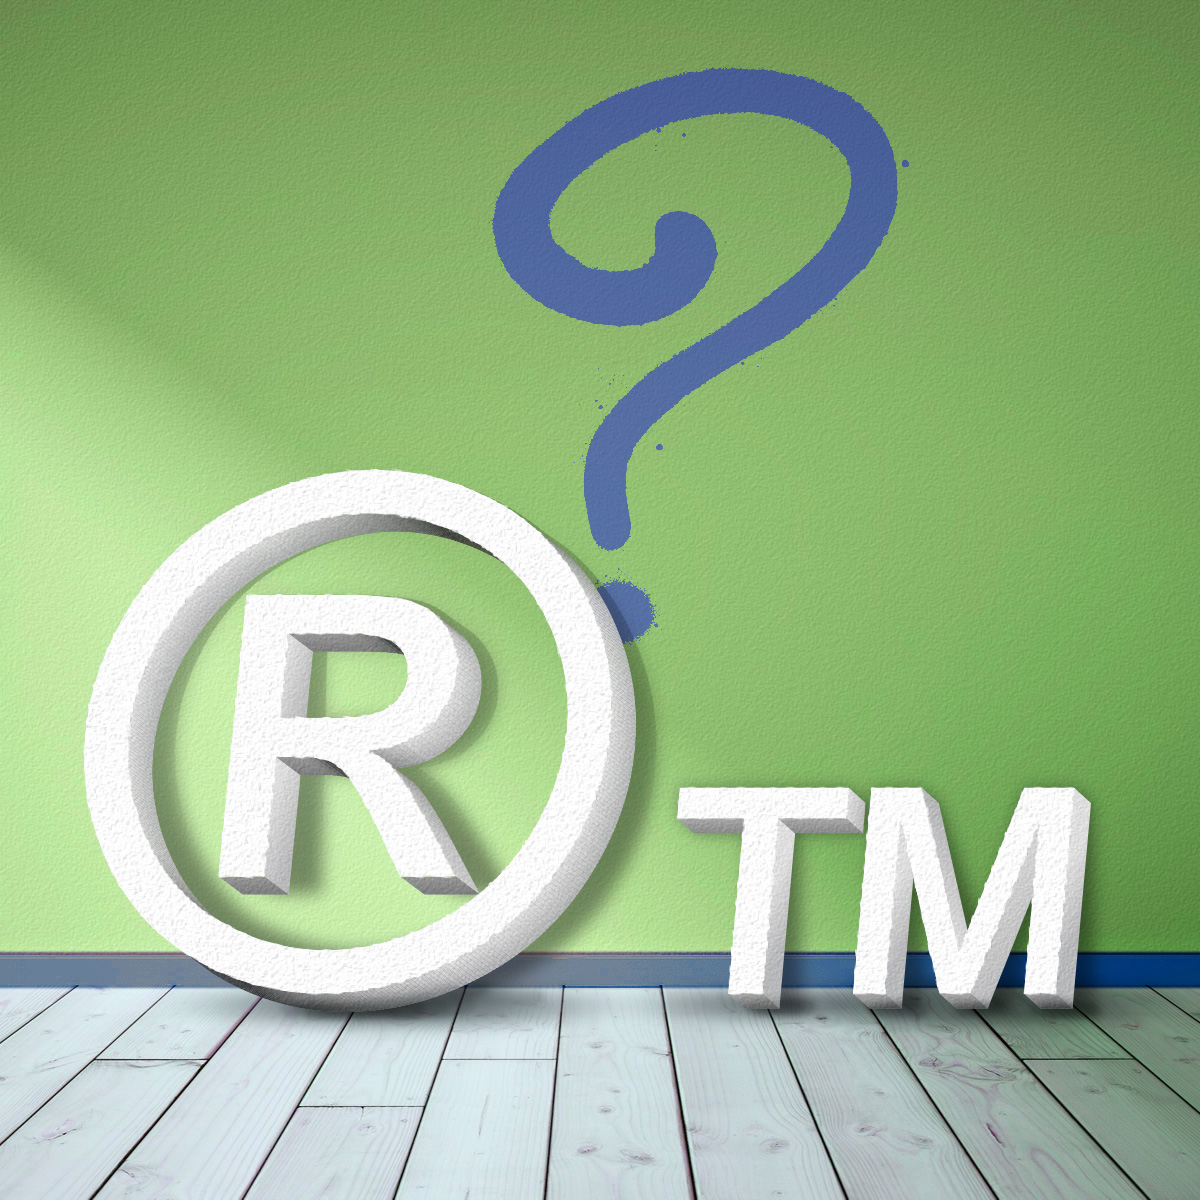 Τι σημαίνει το R μέσα σε κύκλο. Πως χρησιμοποιείται; Τι είναι το σύμβολο TM;